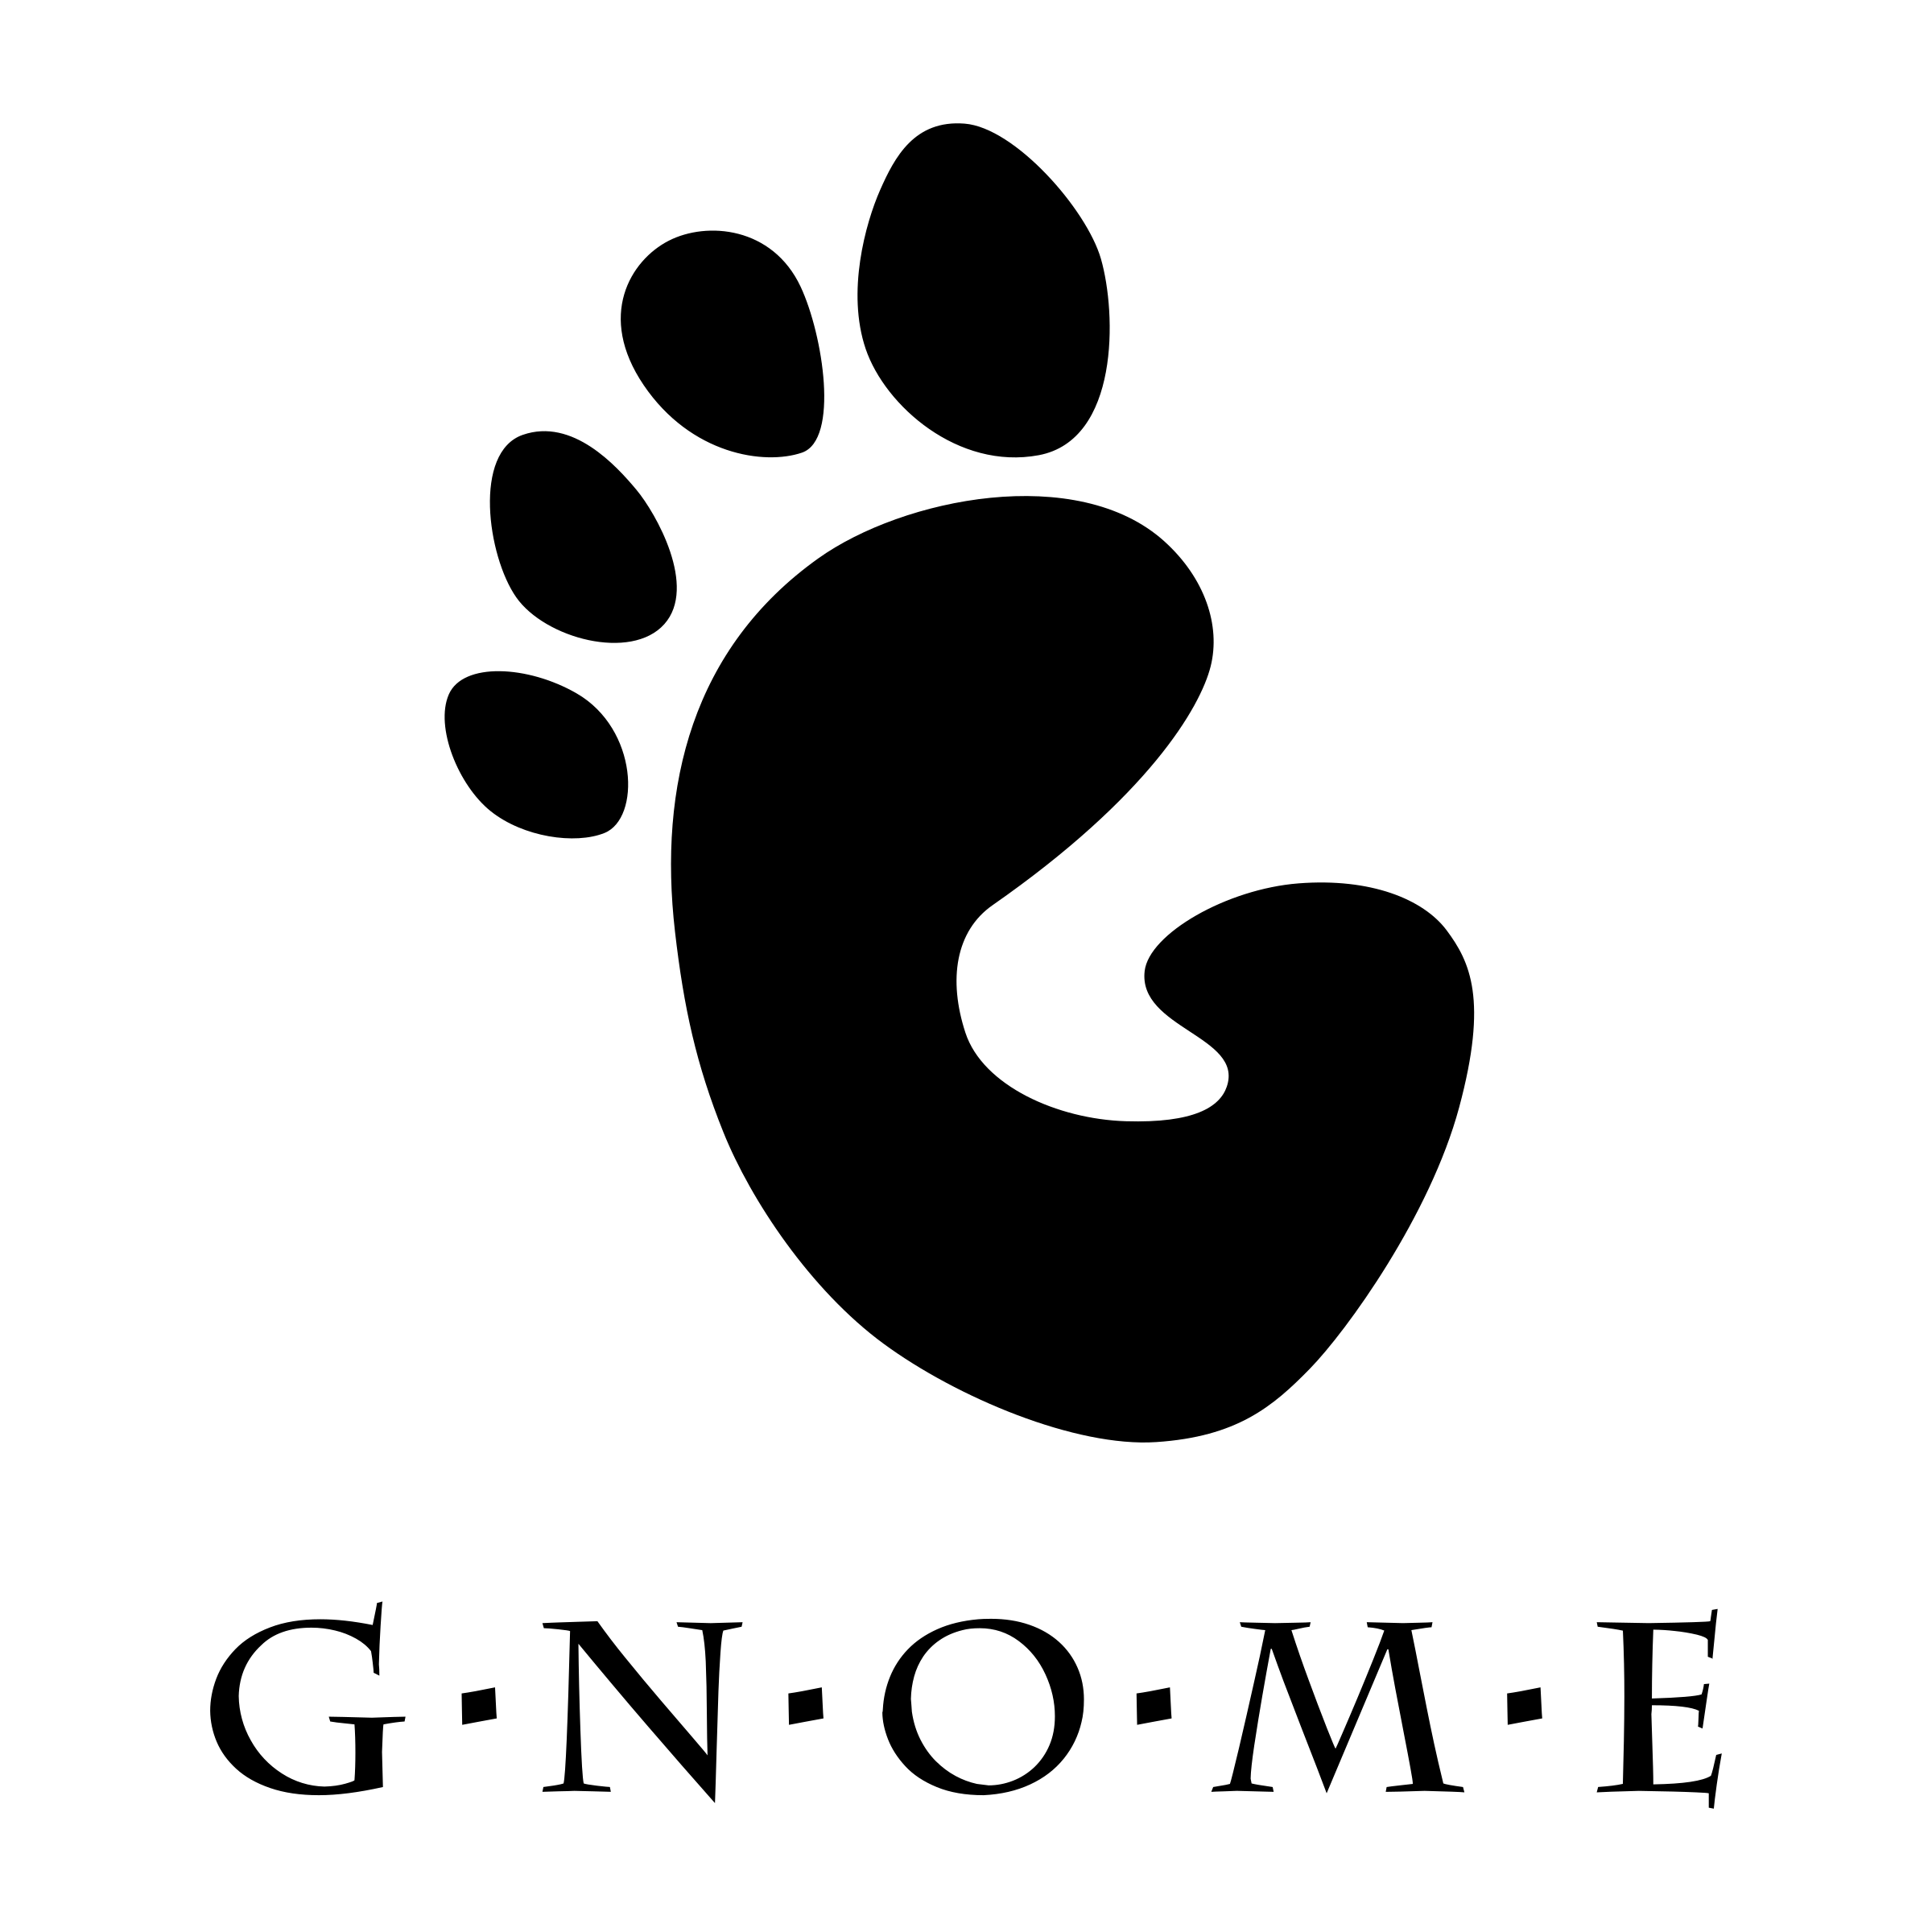 Gnome Logo - Gnome GNU Linux Logo PNG Transparent & SVG Vector - Freebie Supply